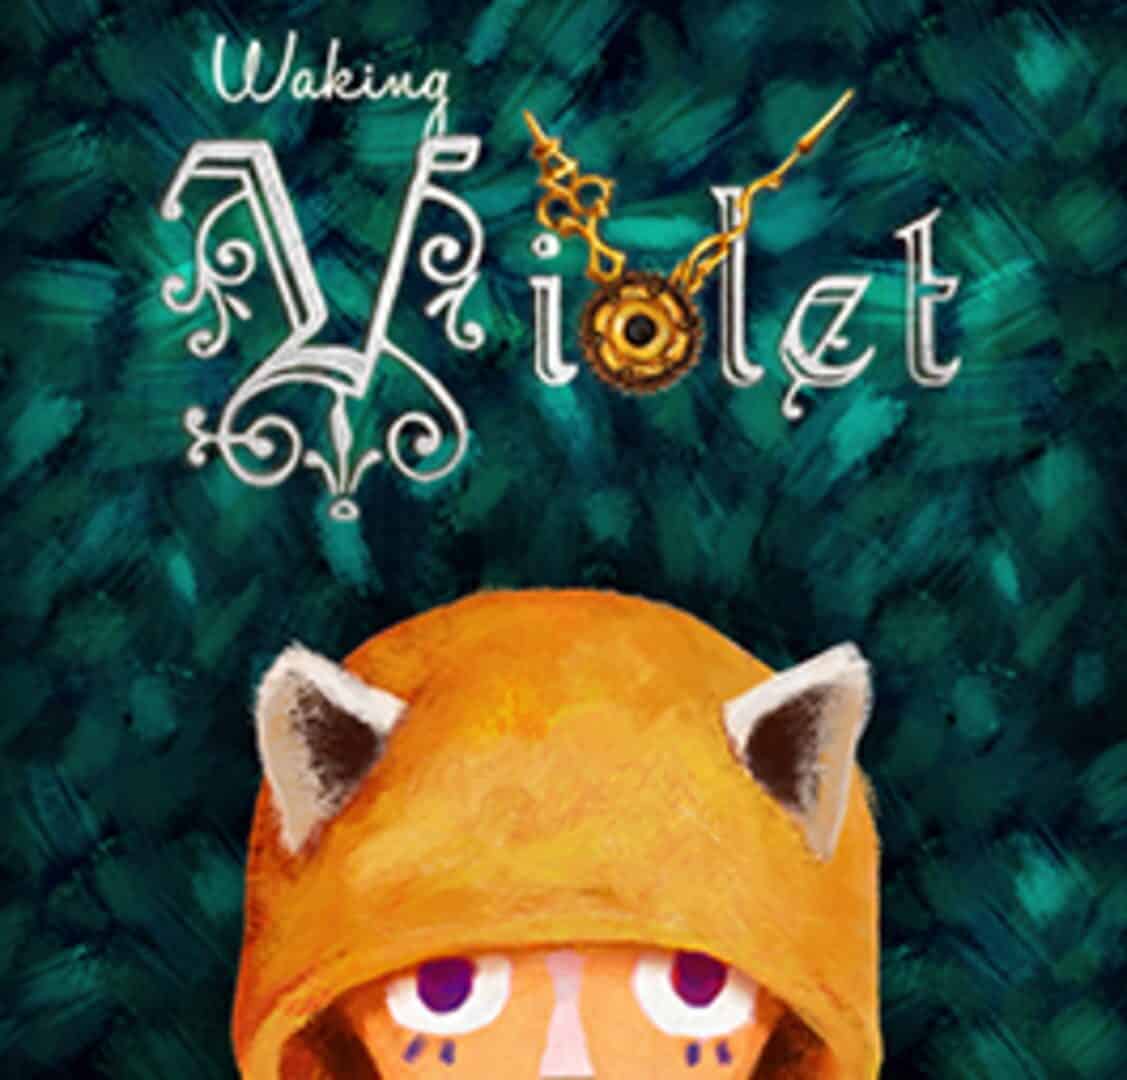 Waking Violet